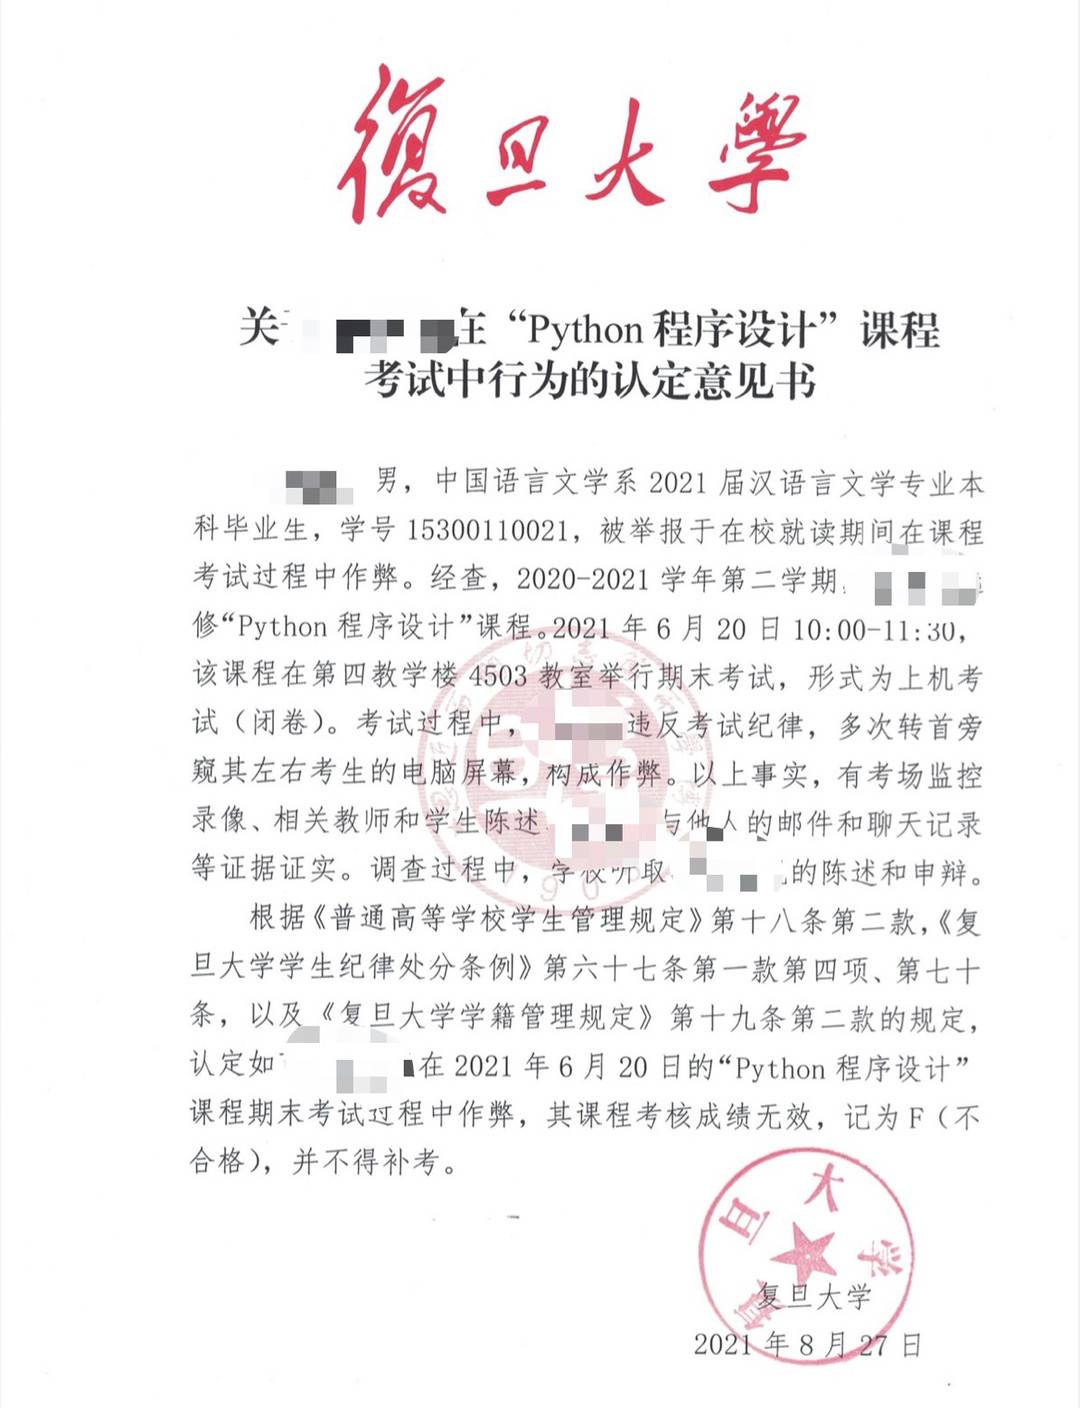 4、上海高中毕业证照片要求：高中毕业证照片有要求吗？ 